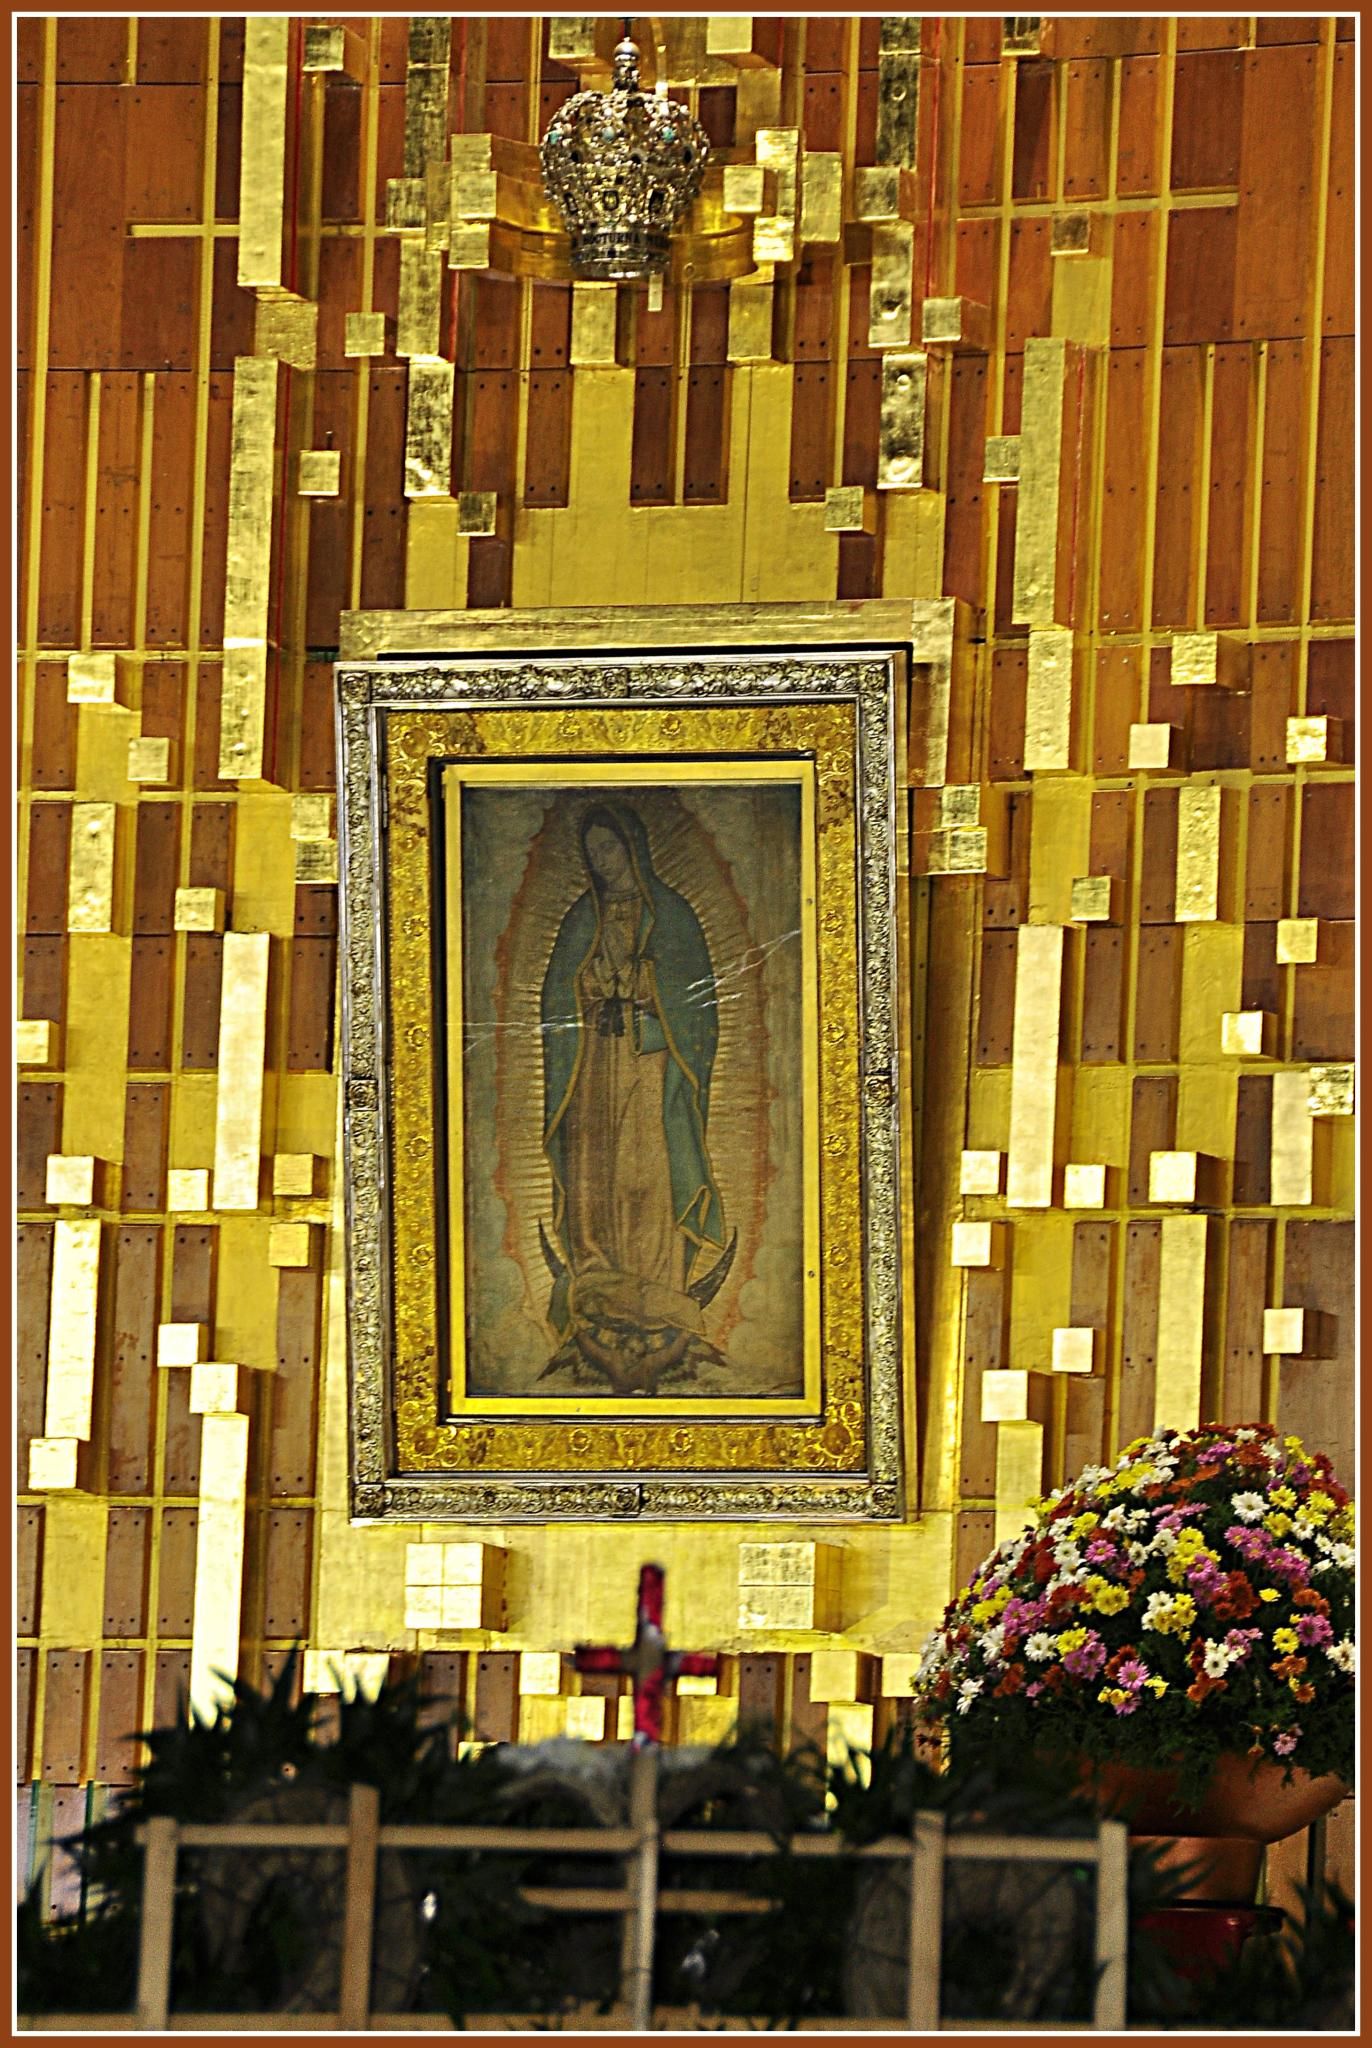 La historia de la Virgen de Guadalupe; lo que debes saber